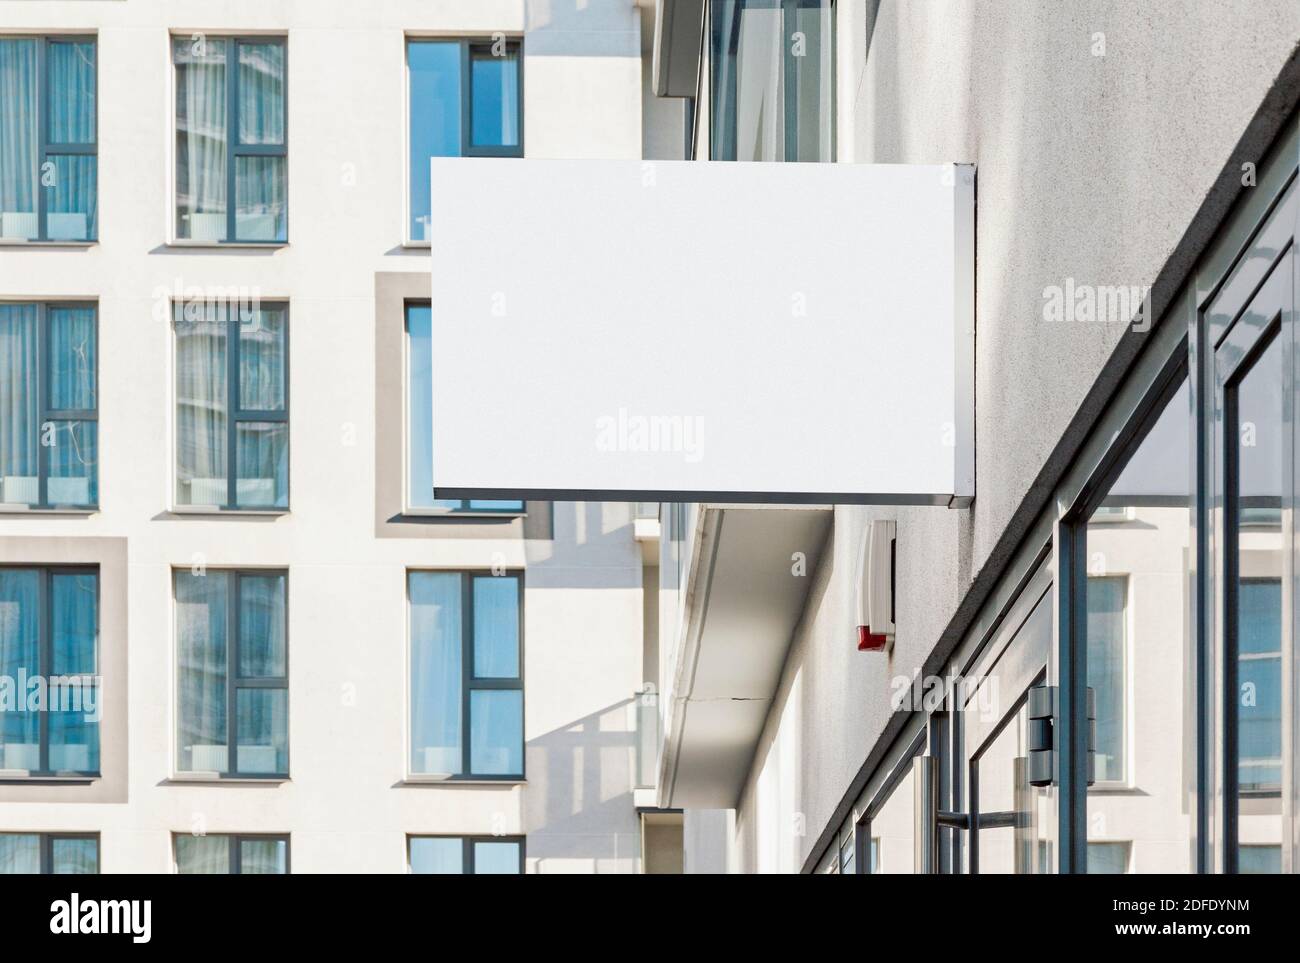 Blank hängende Business-Wand-Zeichen, moderne Stil Outdoor-Signage mit Kopieplatz, um Firmenlogo oder Text hinzuzufügen Stockfoto